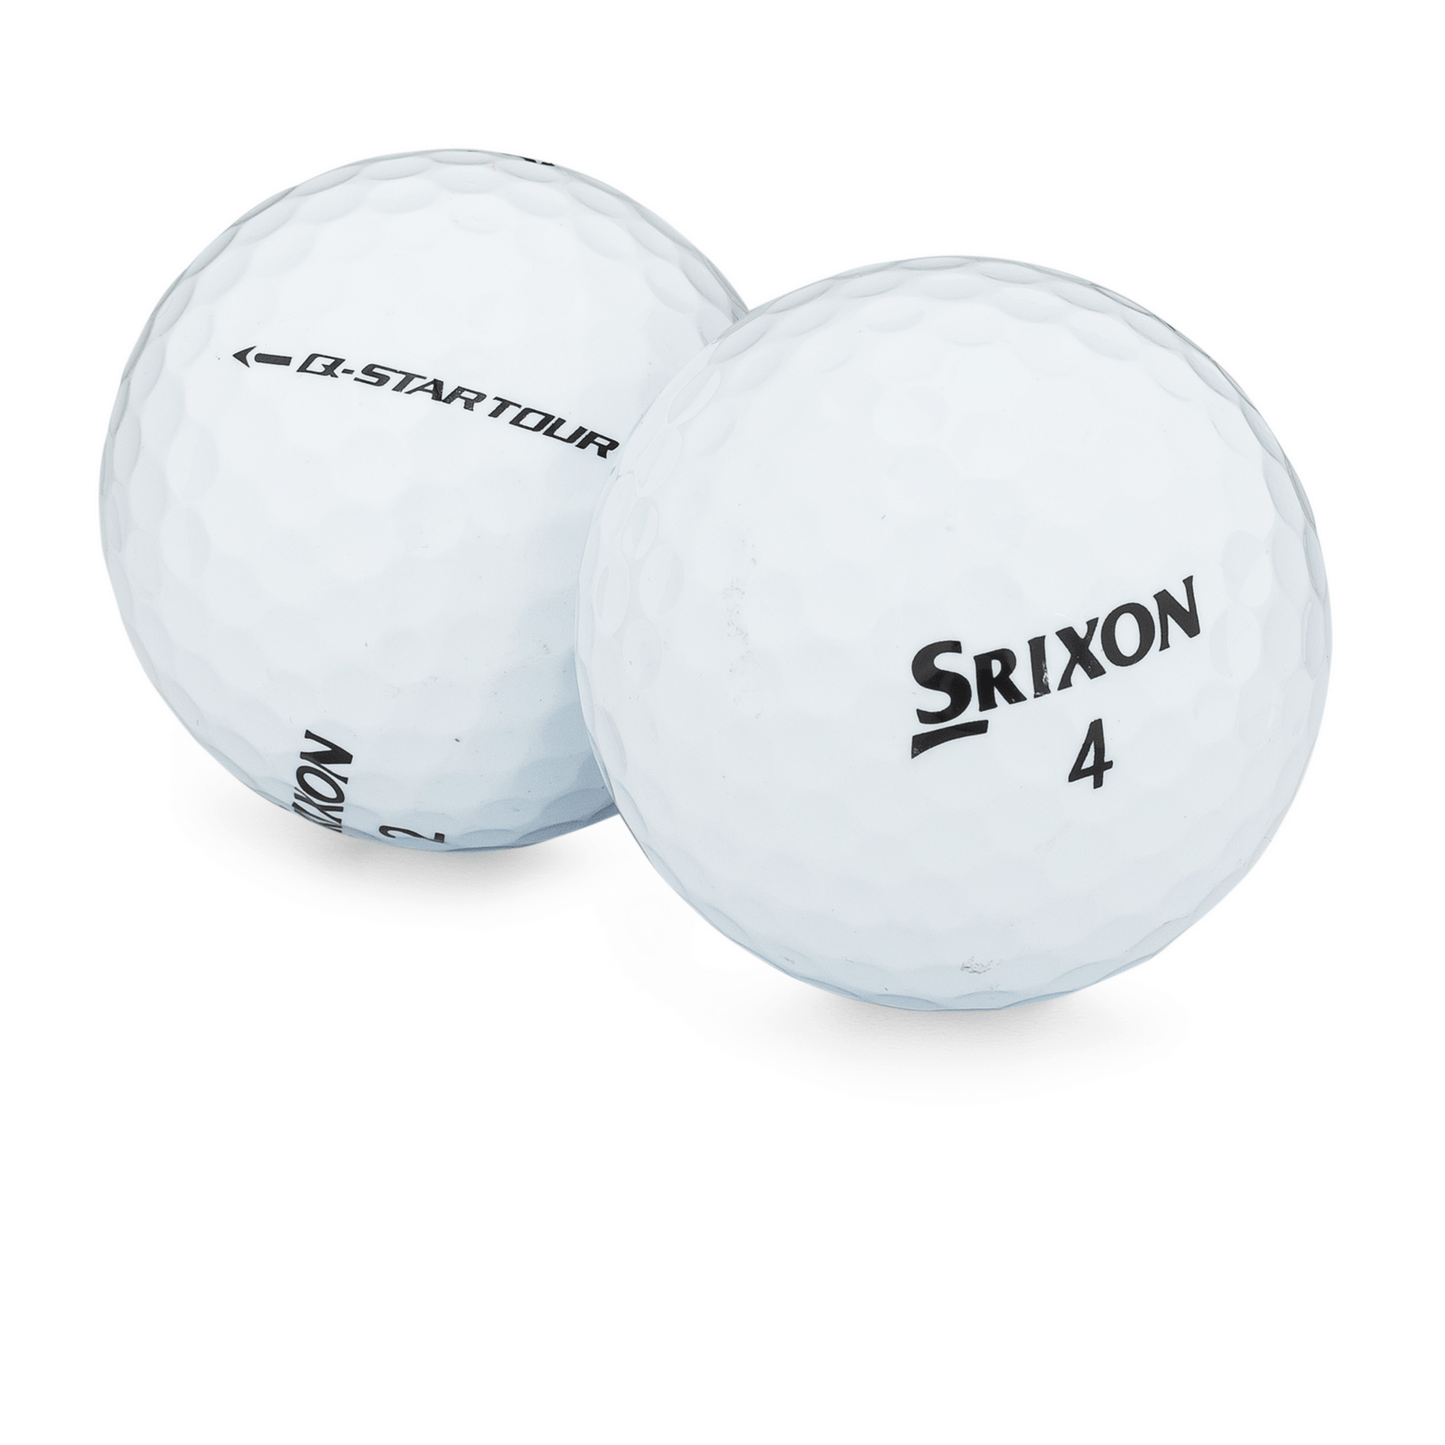 Used Srixon Q-Star Tour Golf Balls - 1 Dozen